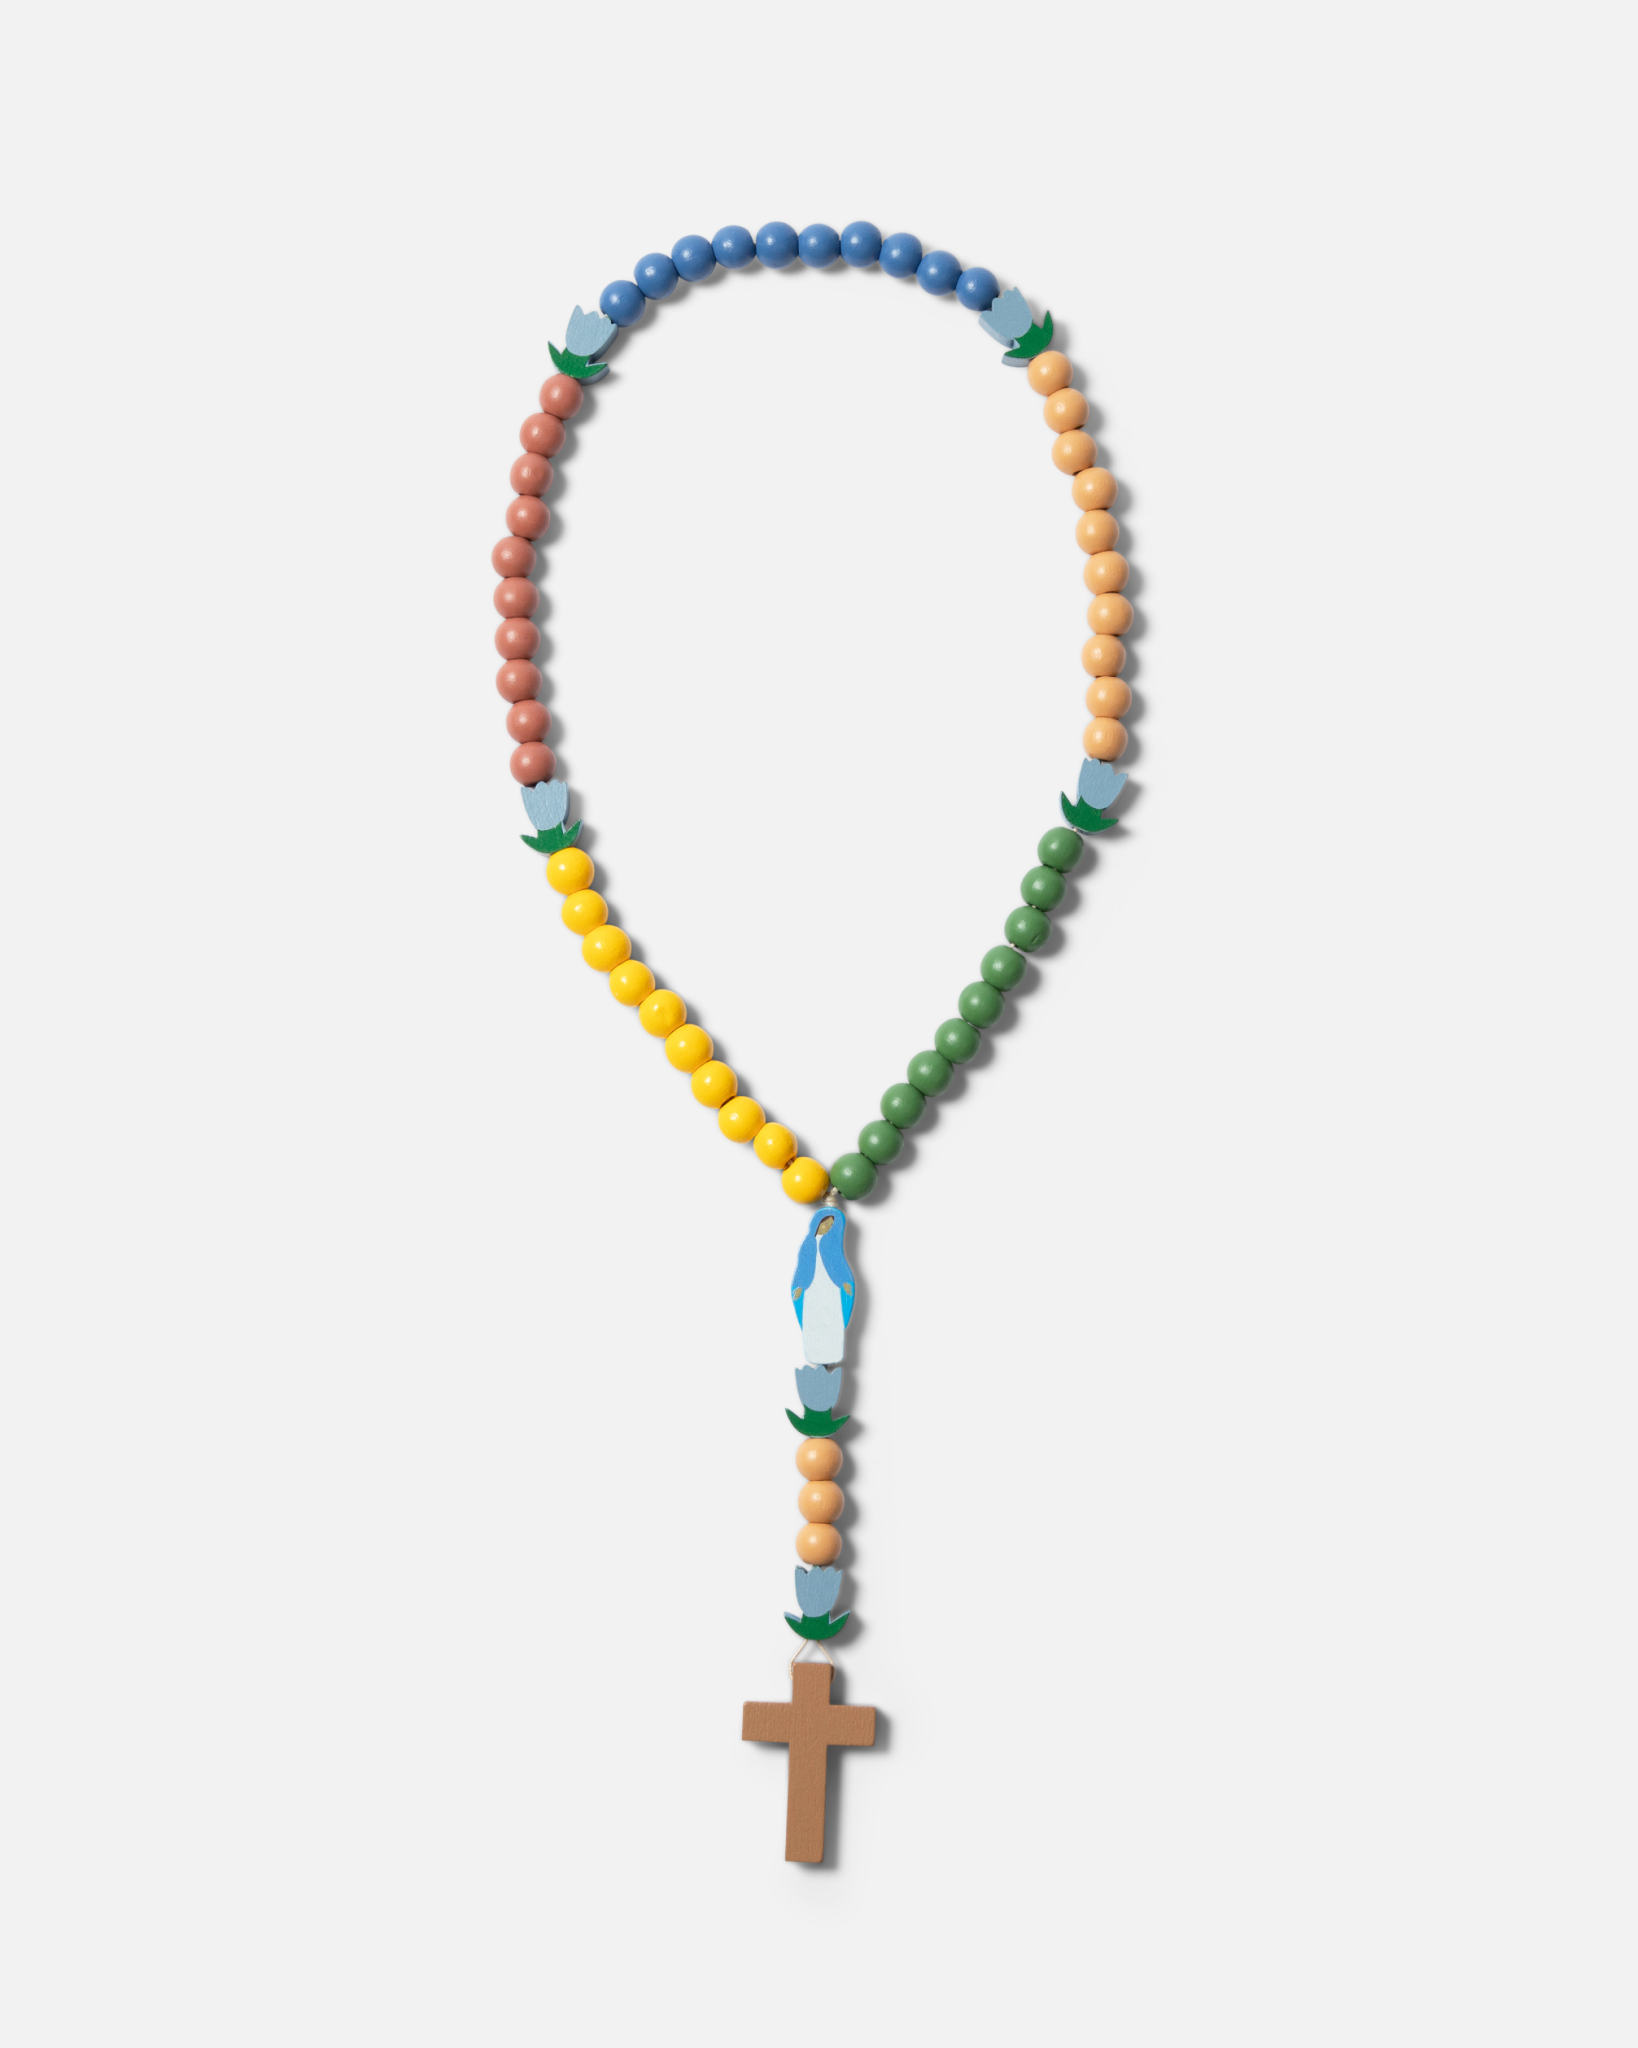 Jumbo “How To Pray the Rosary” Craft Kit - Makes 12